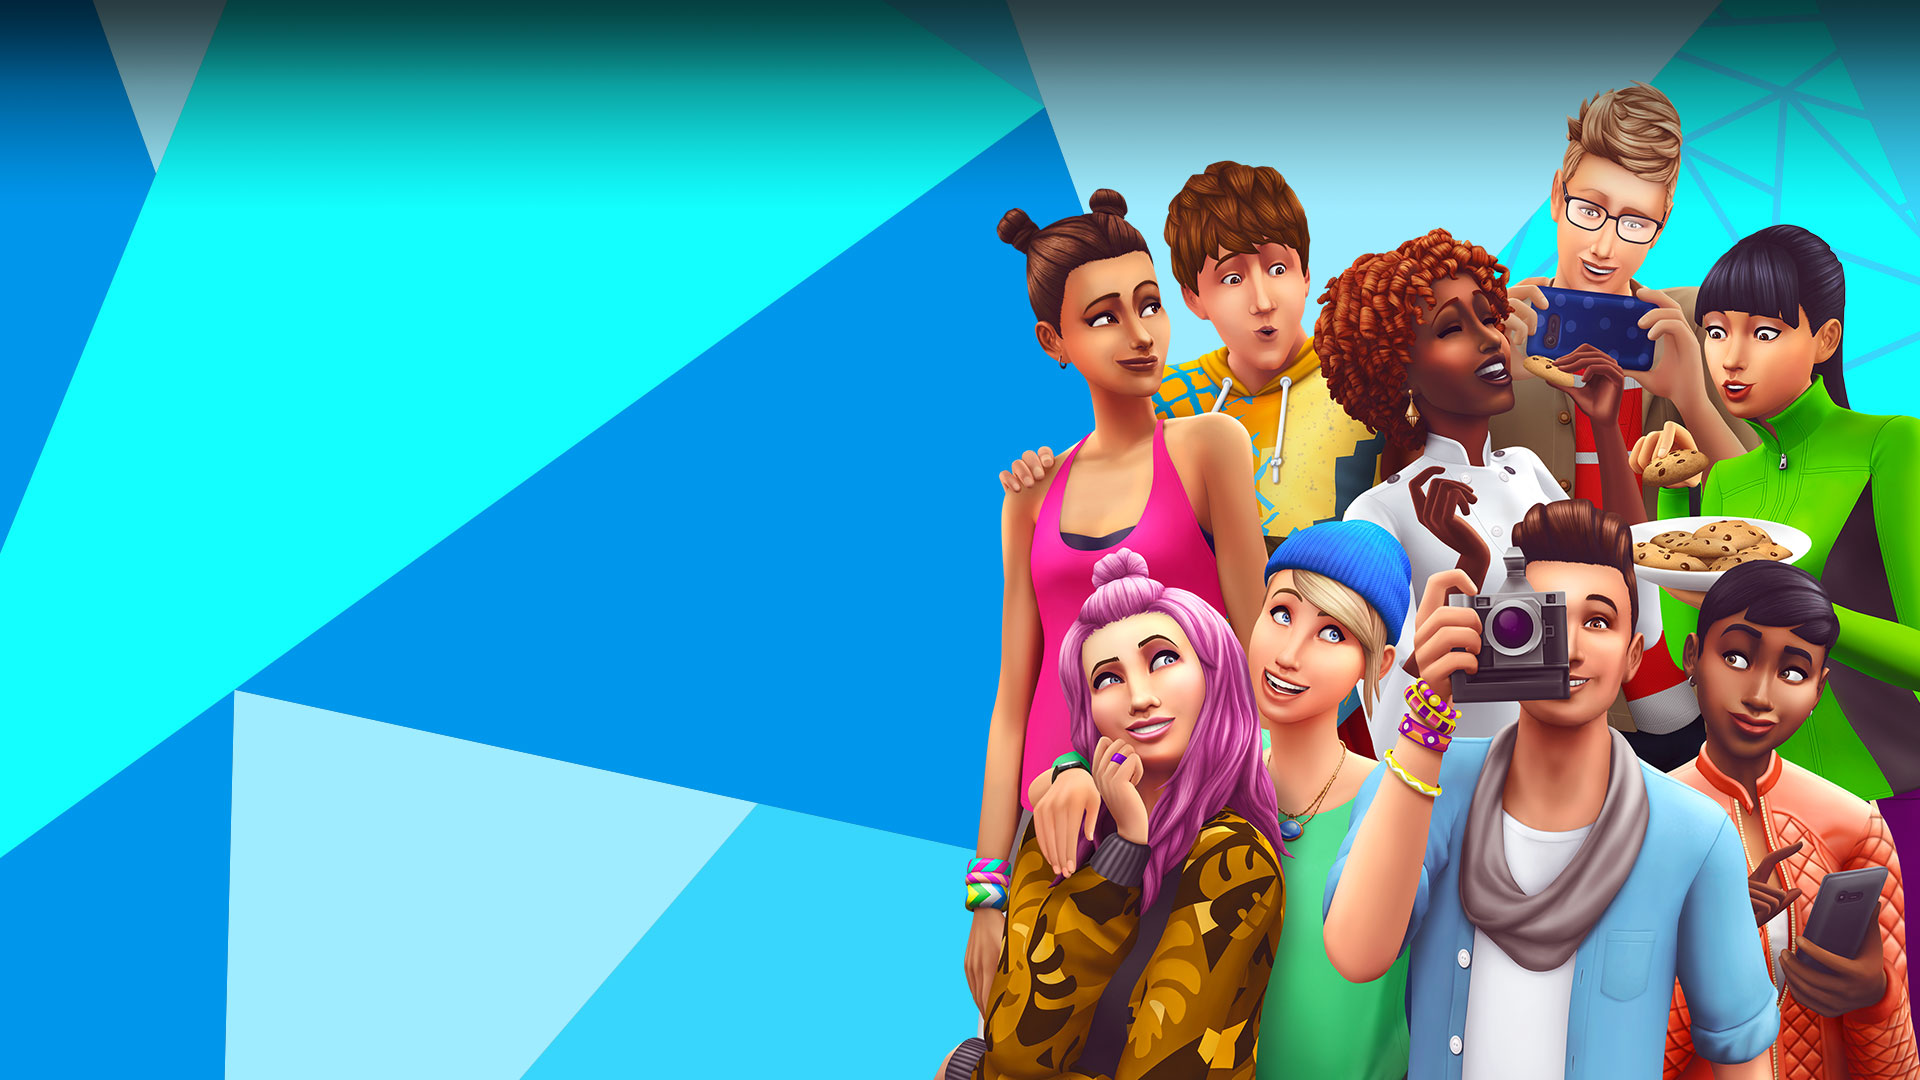 Sims pózujú, delia sa o jedlo a fotia sa pred modrou, svetlomodrou a bielou trojuholníkovou mozaikou.